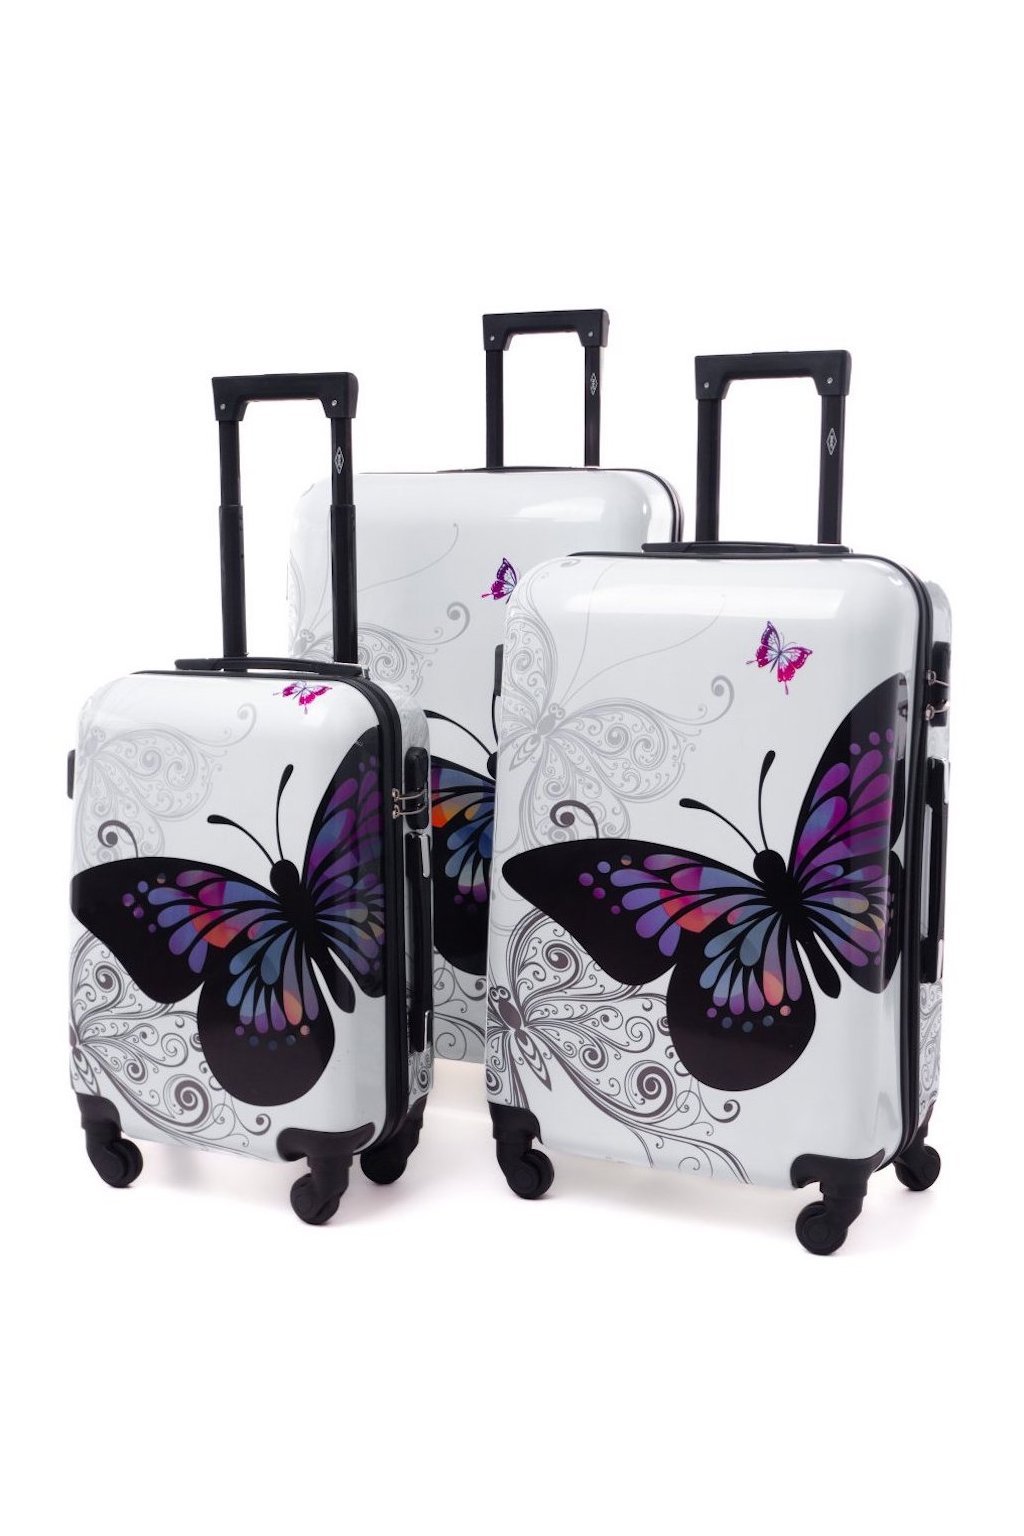 Cestovní kufr RGL 5188 butterfly - Set 3v1  41l, 72l, 100l